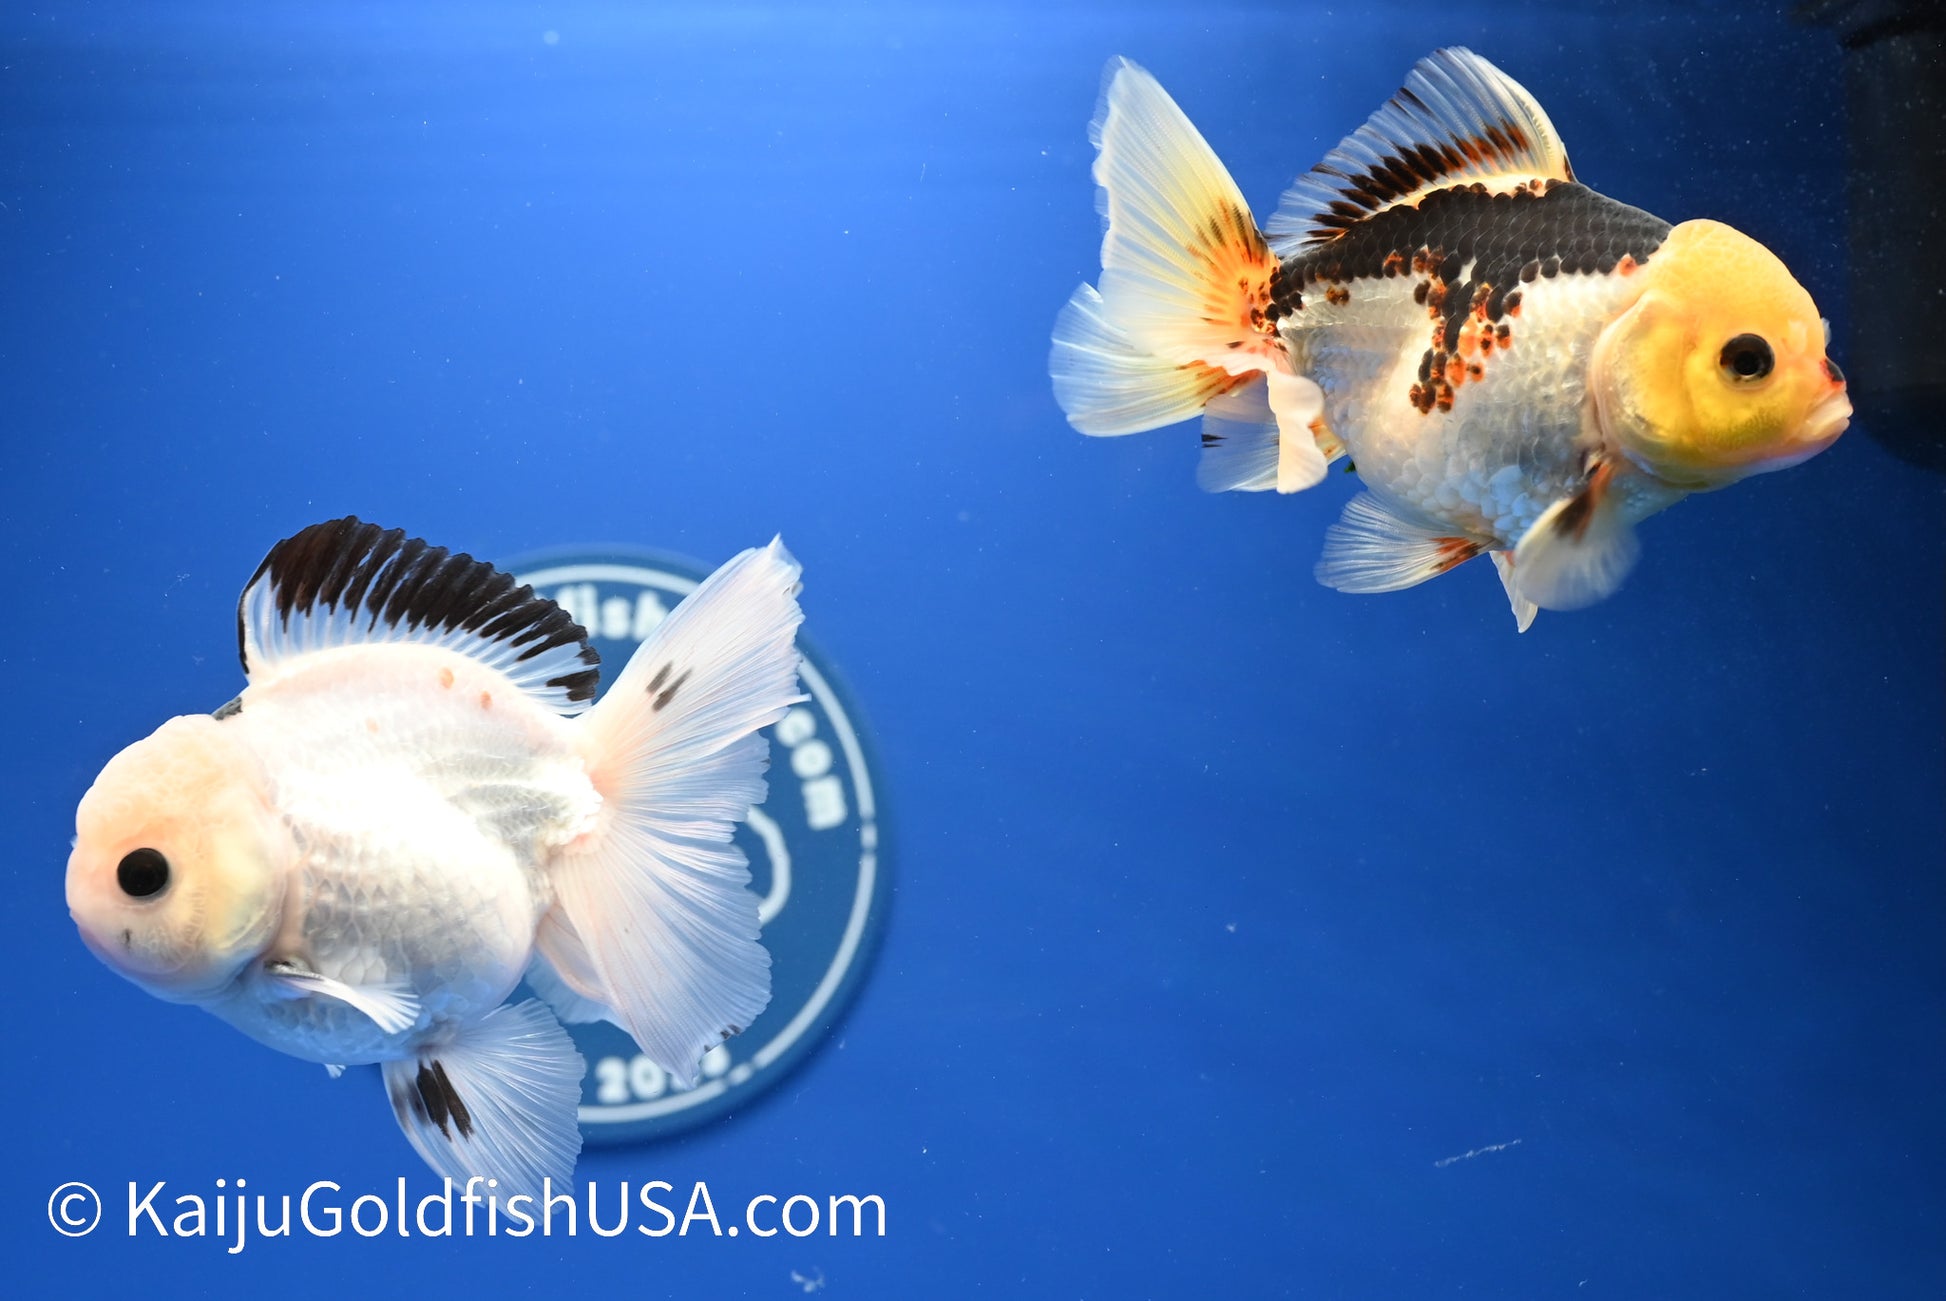 2 Pack Panda/Tricolor Oranda 3.5 - 4.5 inches (1215_OR17) - Kaiju Goldfish USA